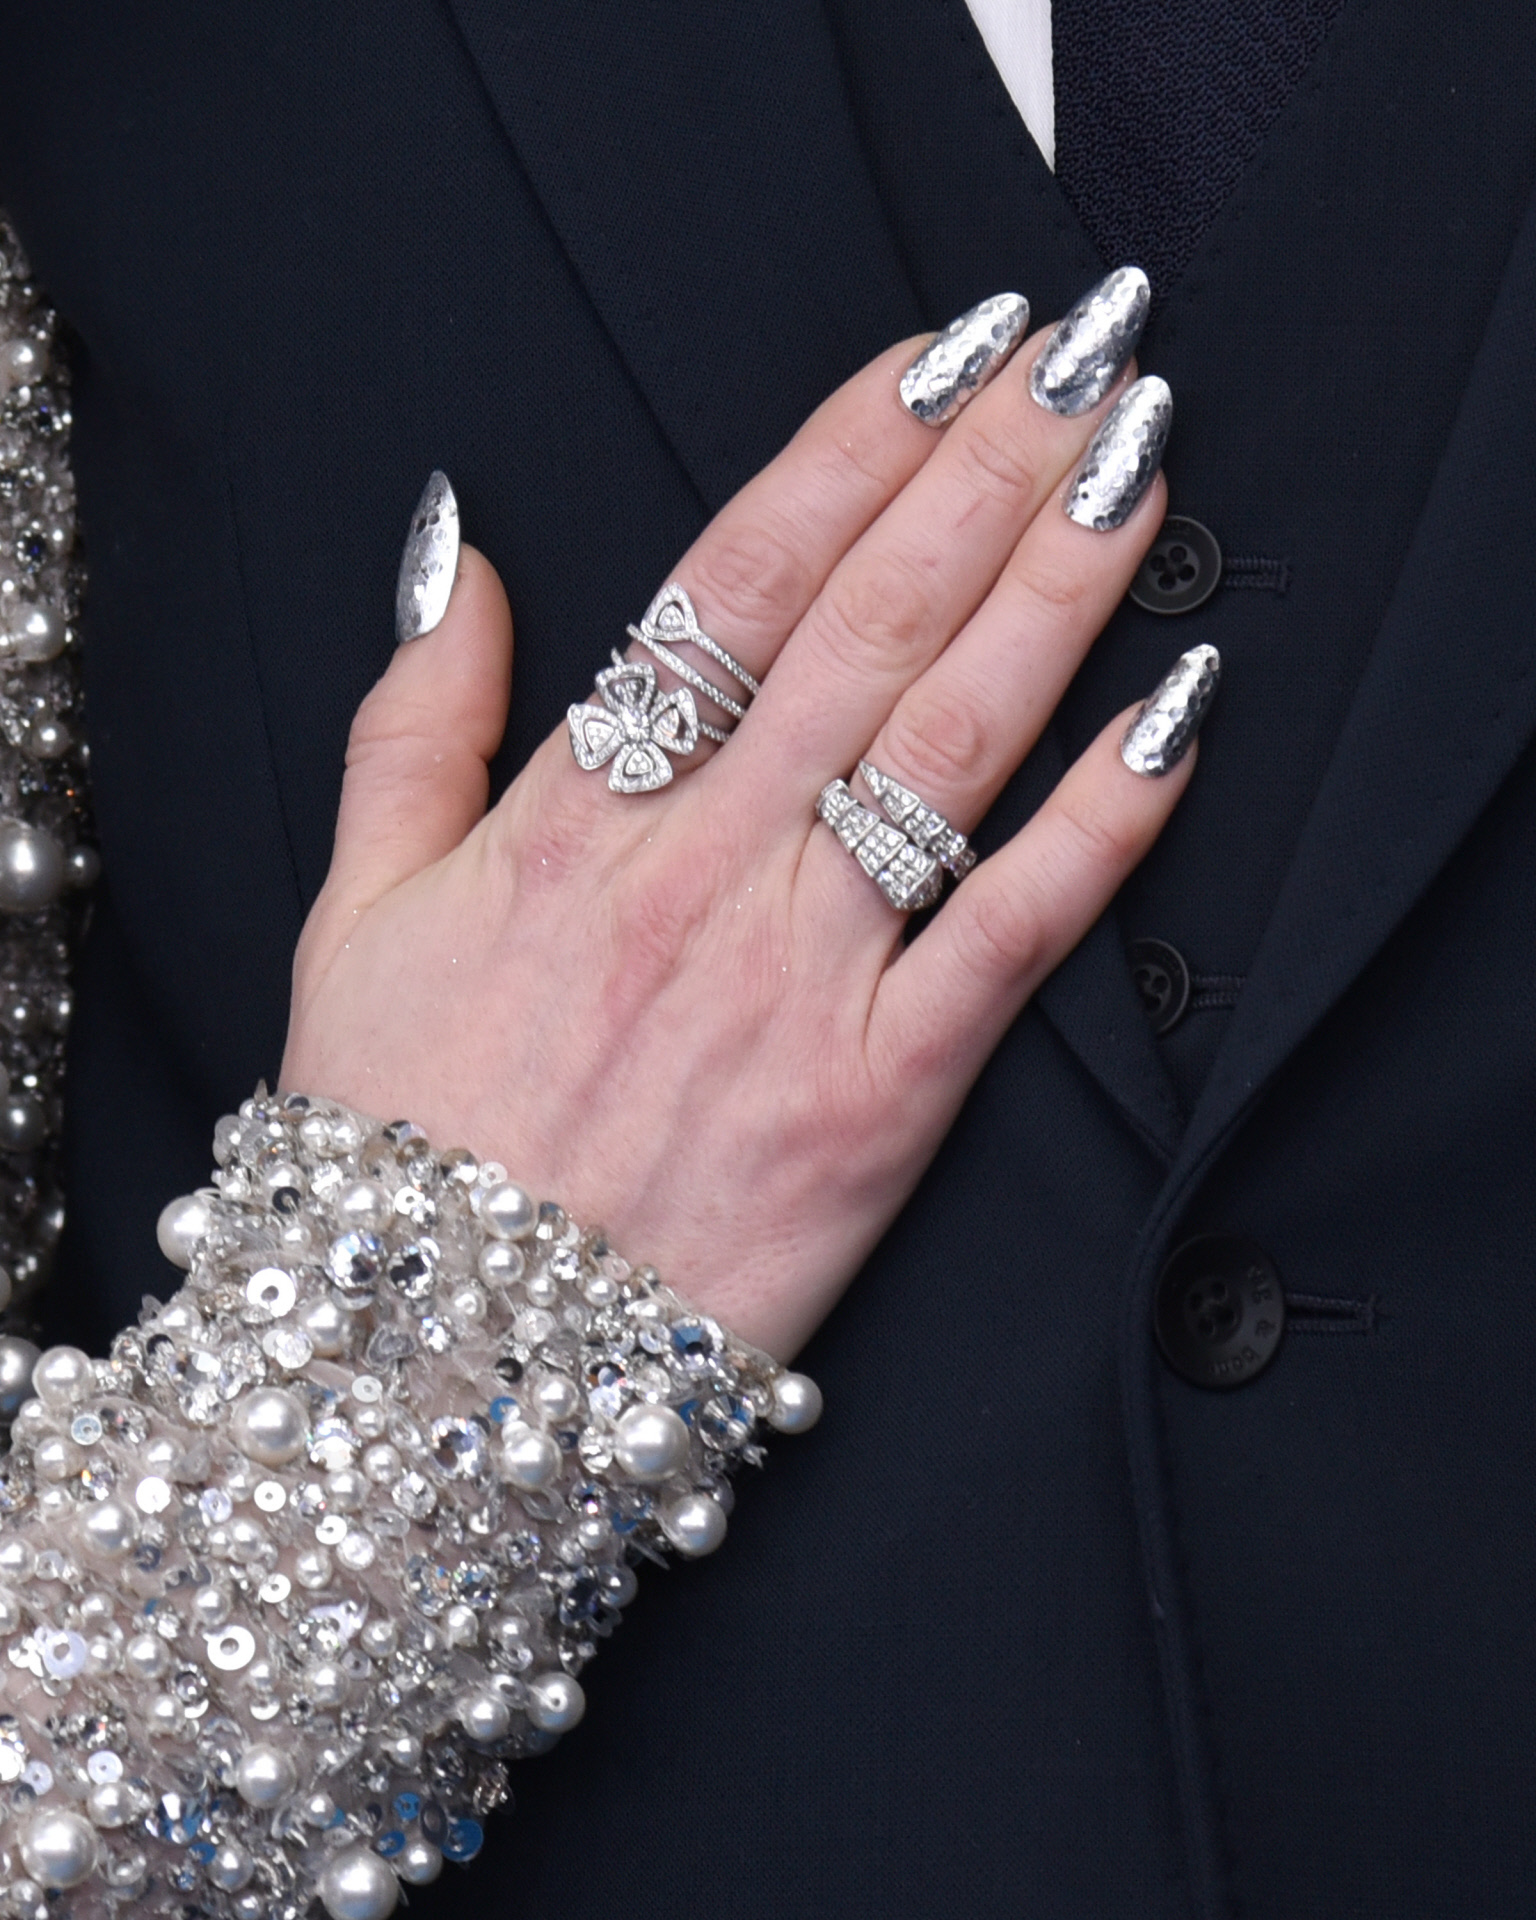 Anne Hathaway apuesta por unas uñas metalizadas con nail art geométrico.